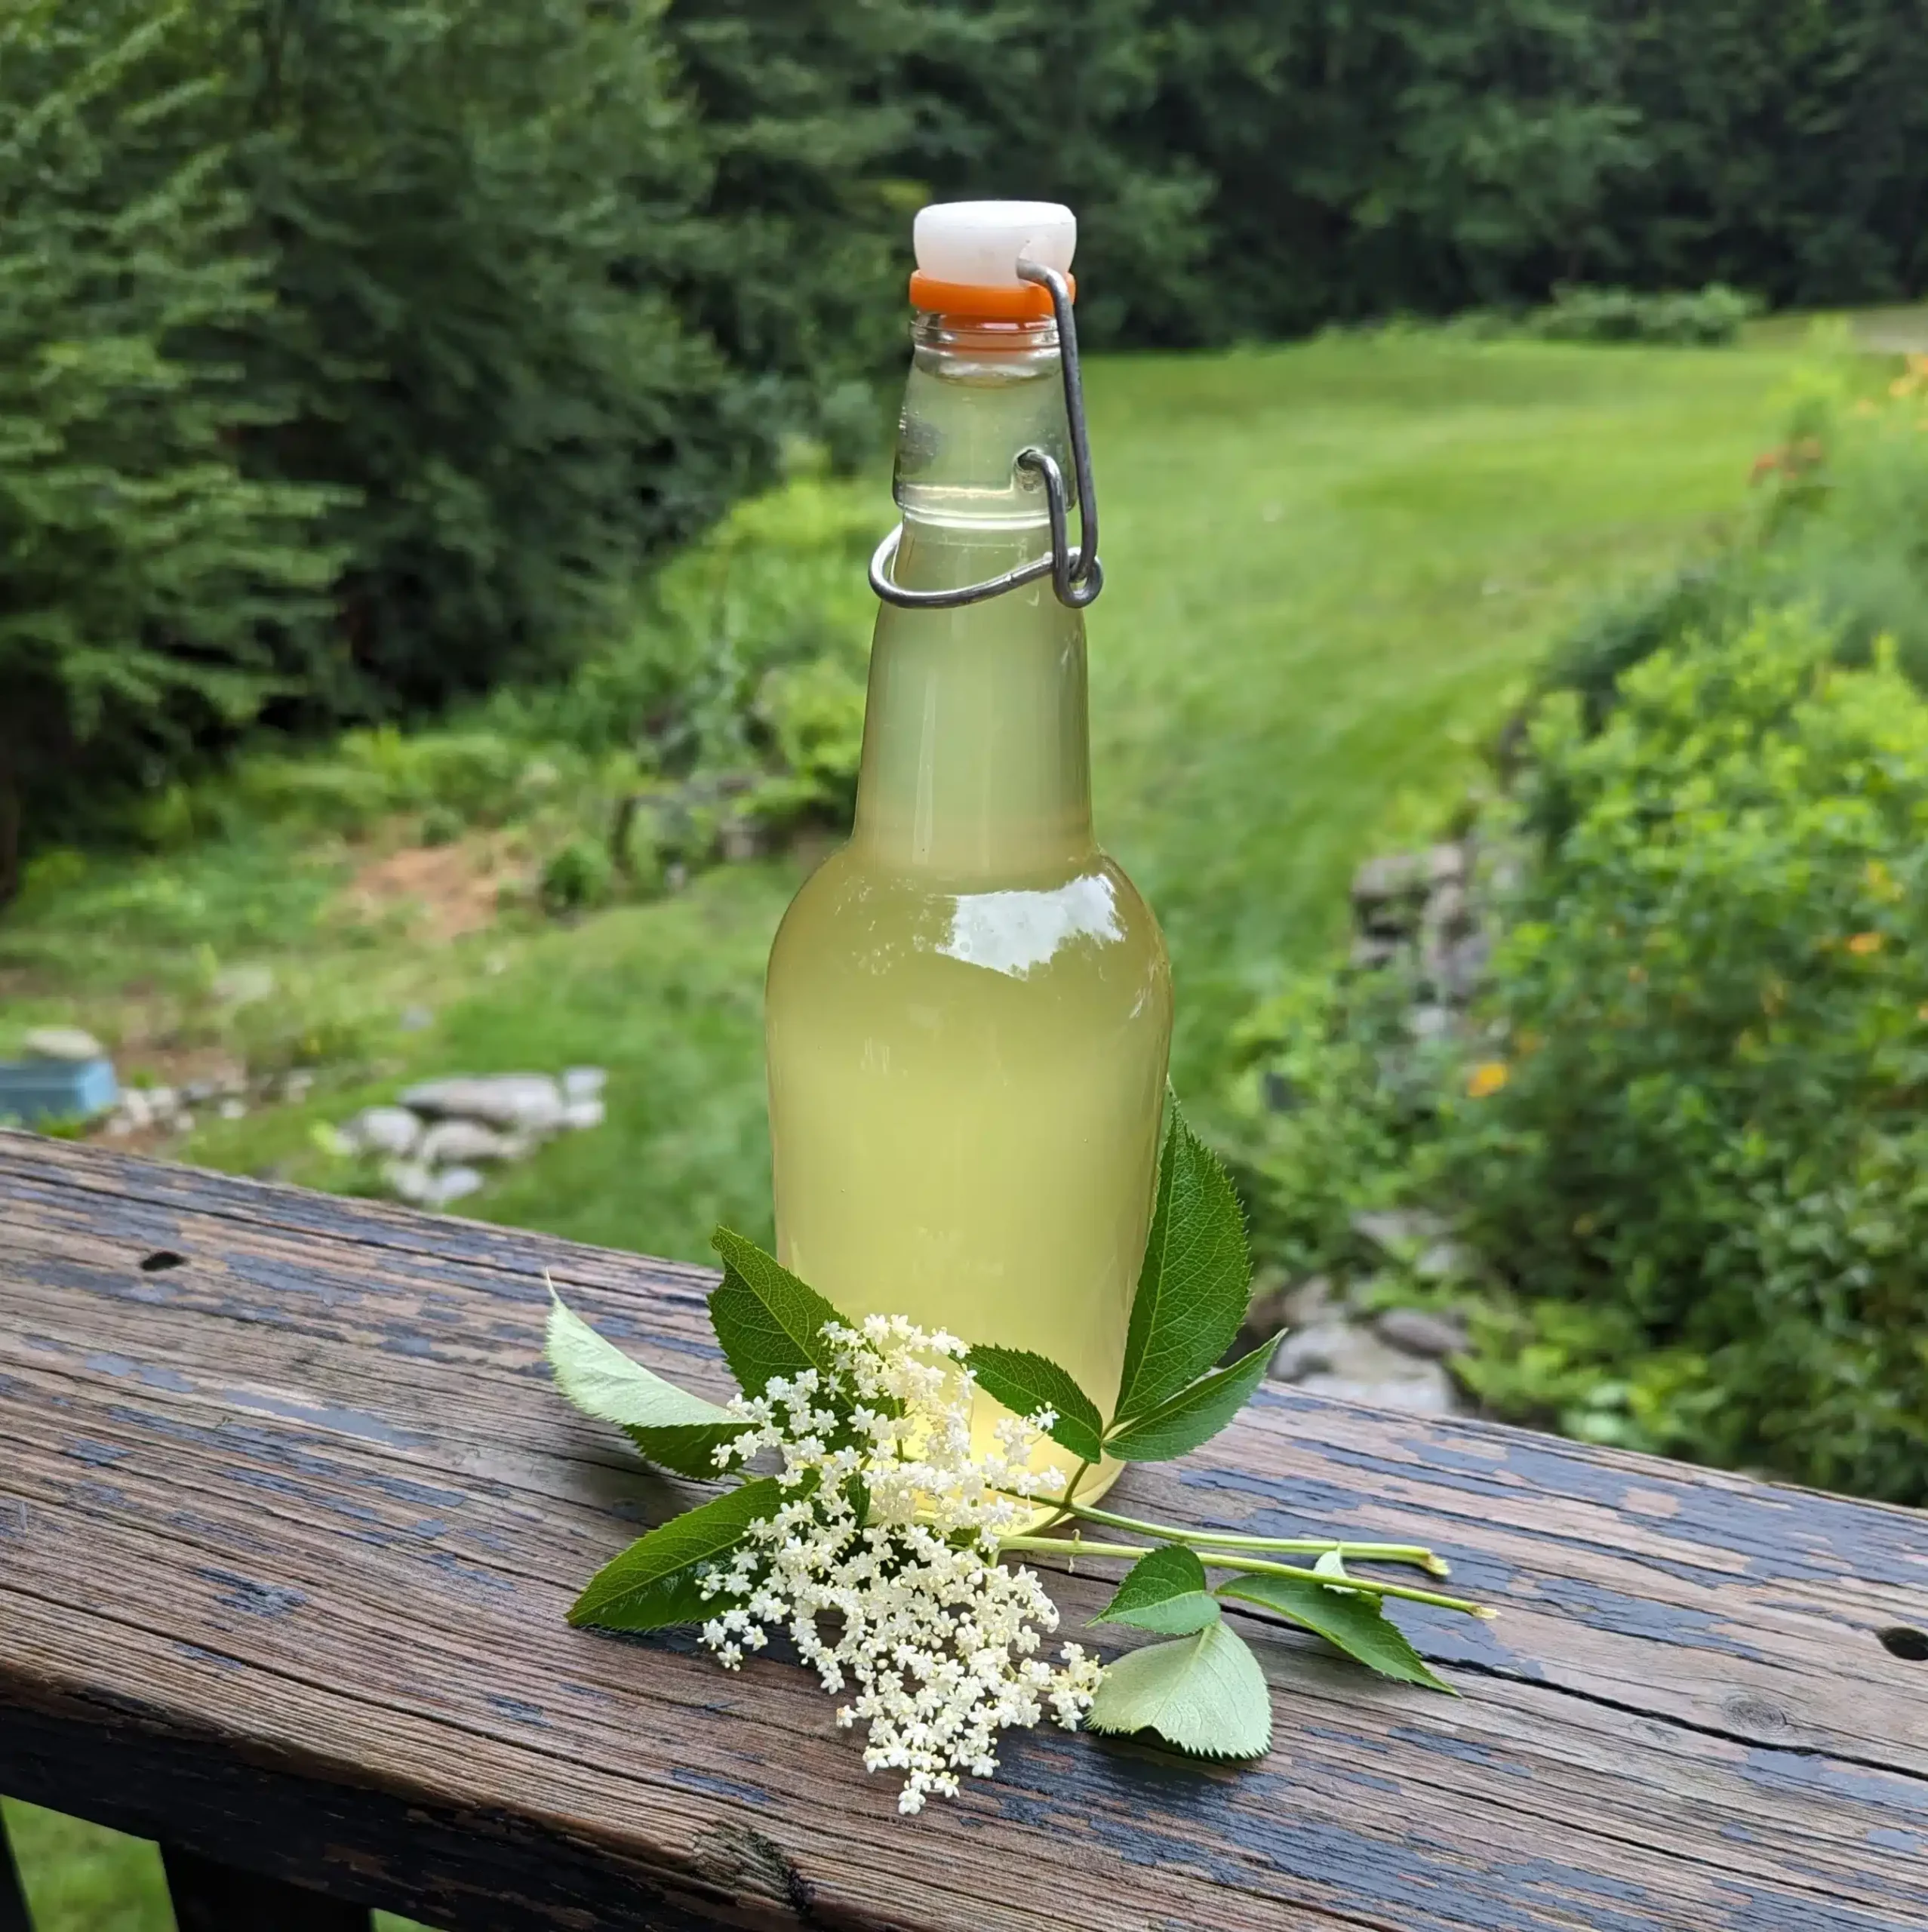 Elderflower syrup in a bottle with an elderflower.